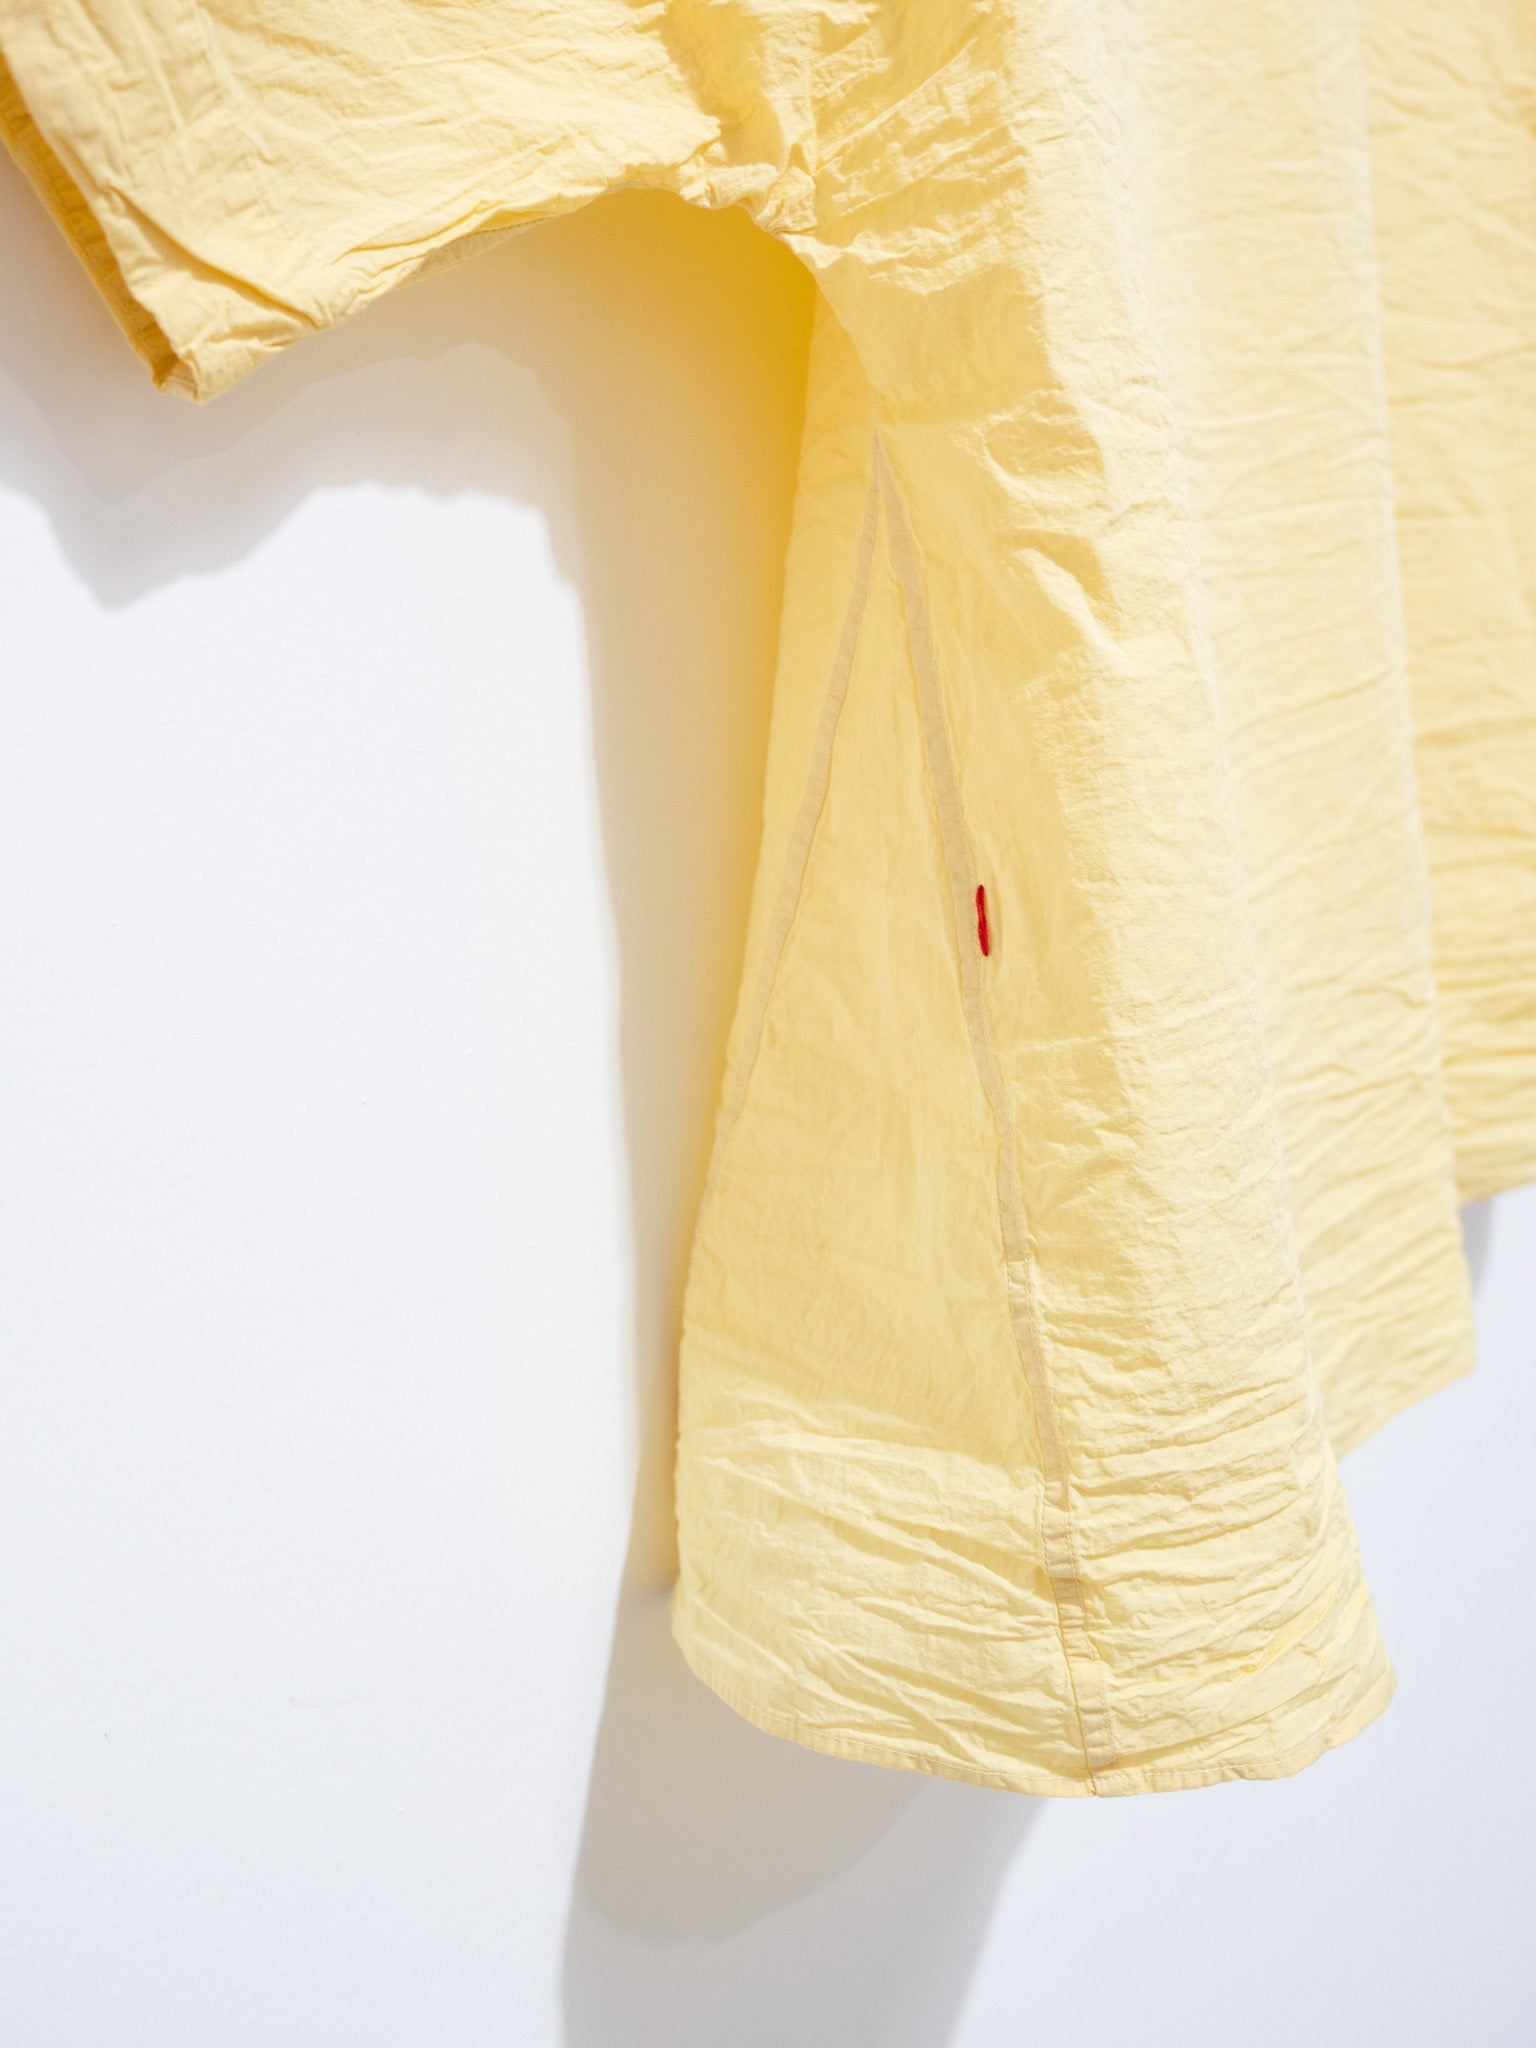 Namu Shop - Casey Casey Waga Soleil Shirt Light Paper - Butter